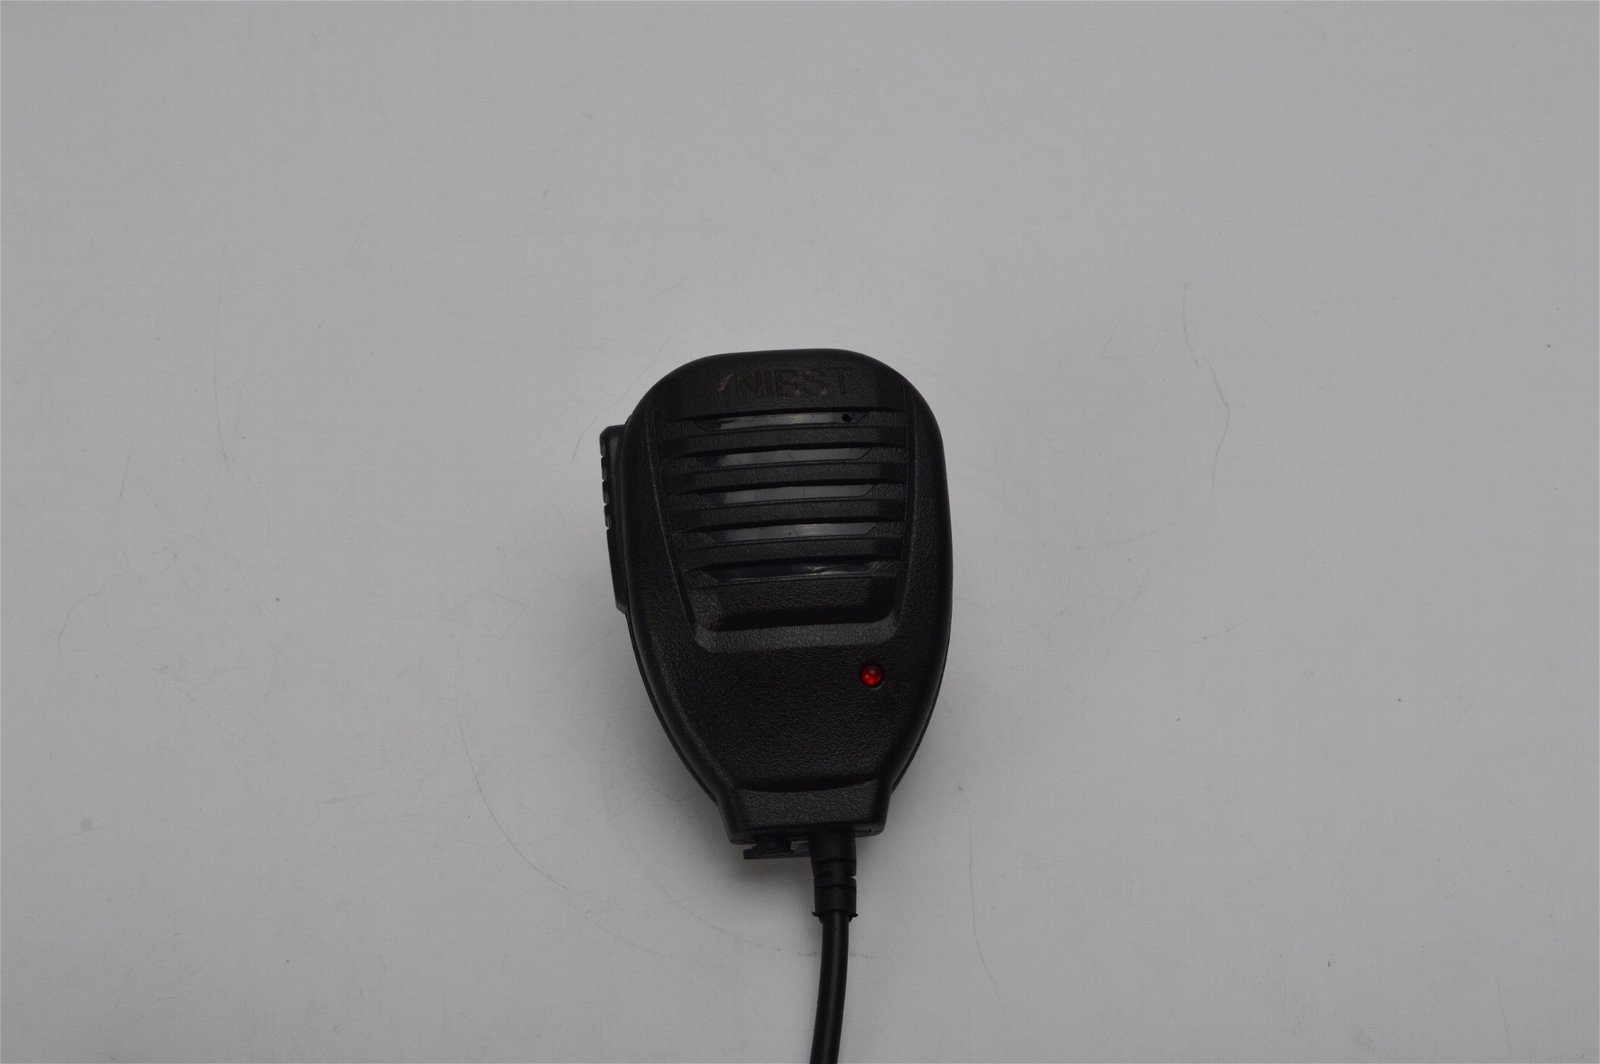 YNIBST replacement 2-way radio Speaker microphone For Baofeng UV5R Kenwood 2